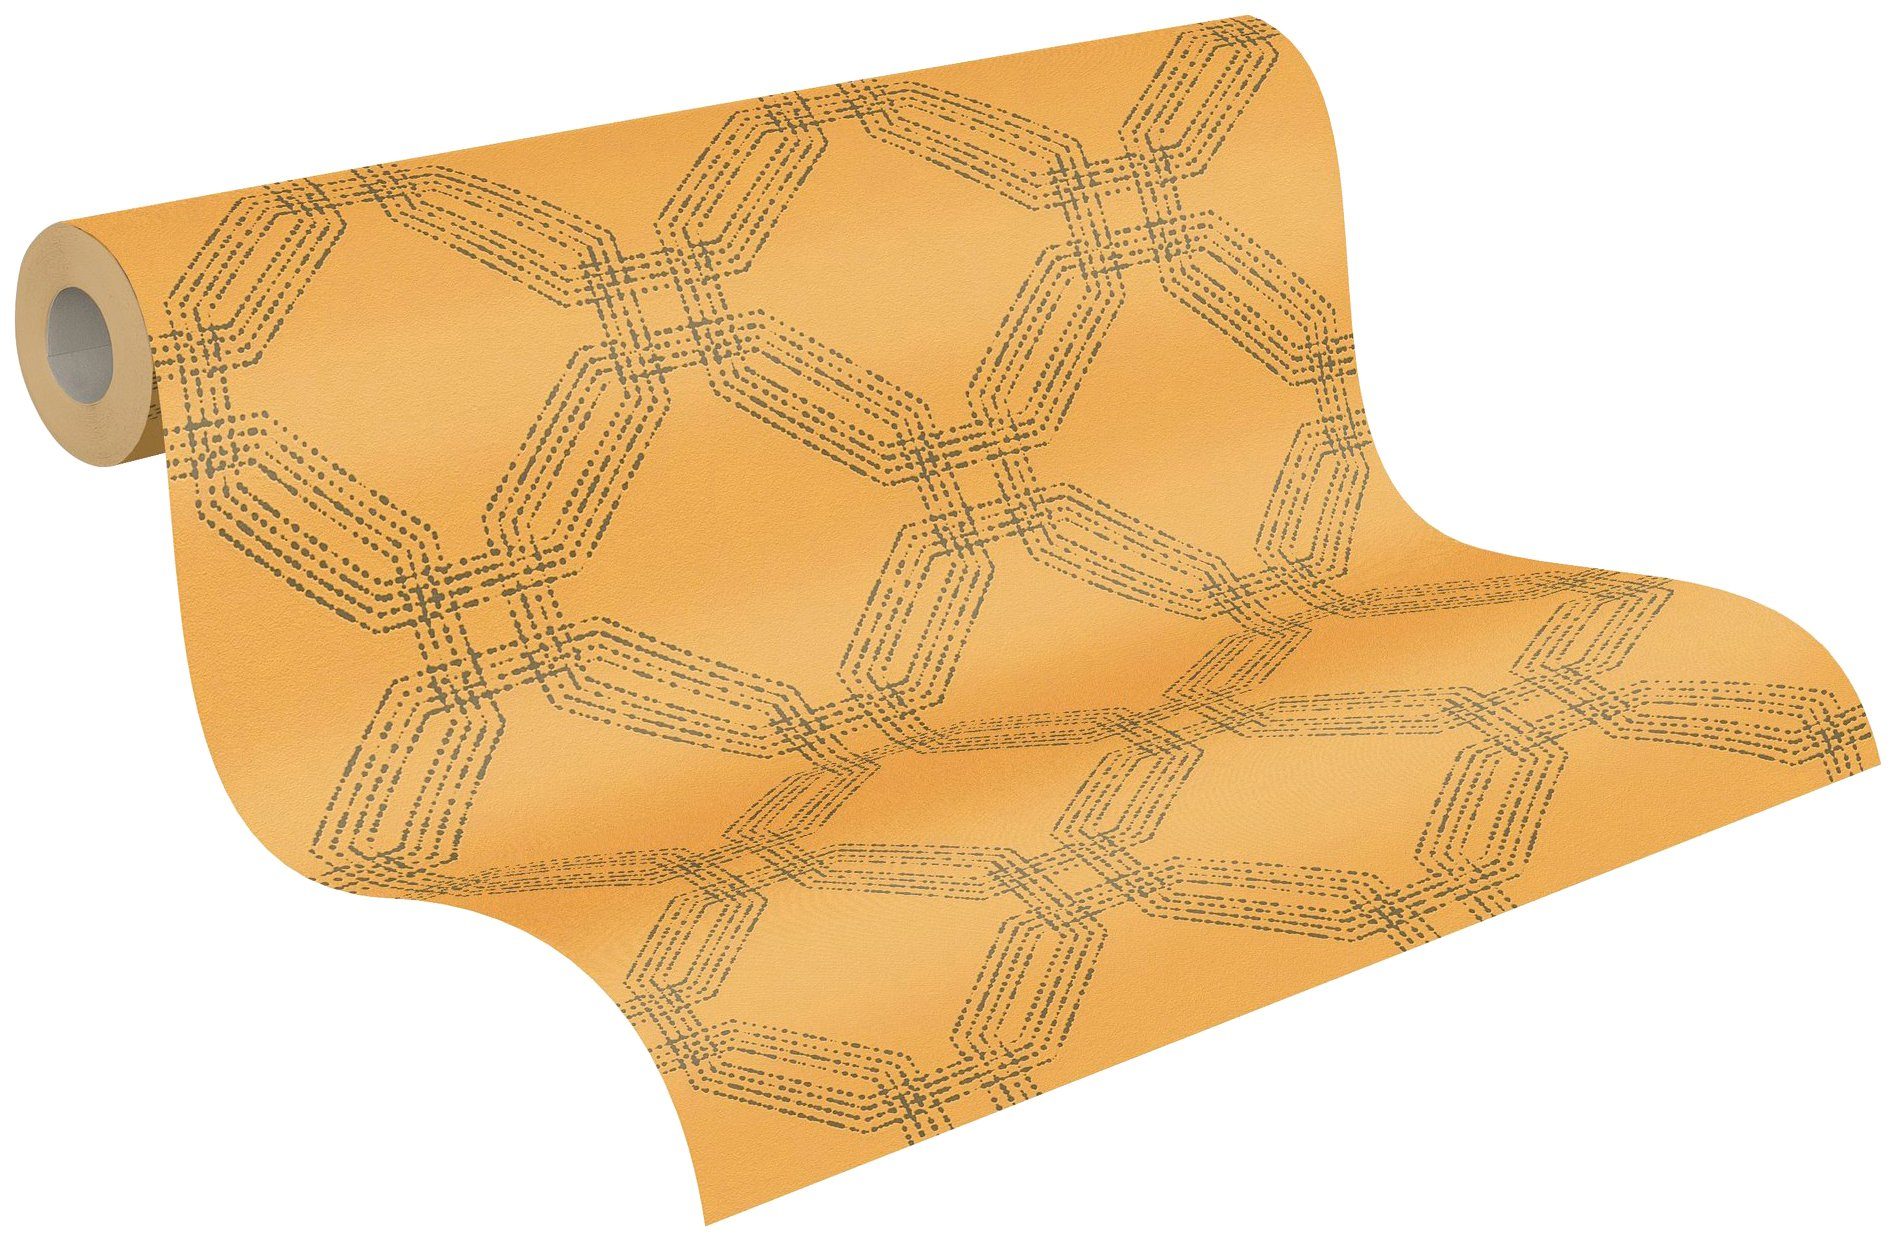 Création Tapete aufgeschäumt, orange/schwarz Moderne Geometrisch A.S. Vliestapete Style, gemustert, Pop